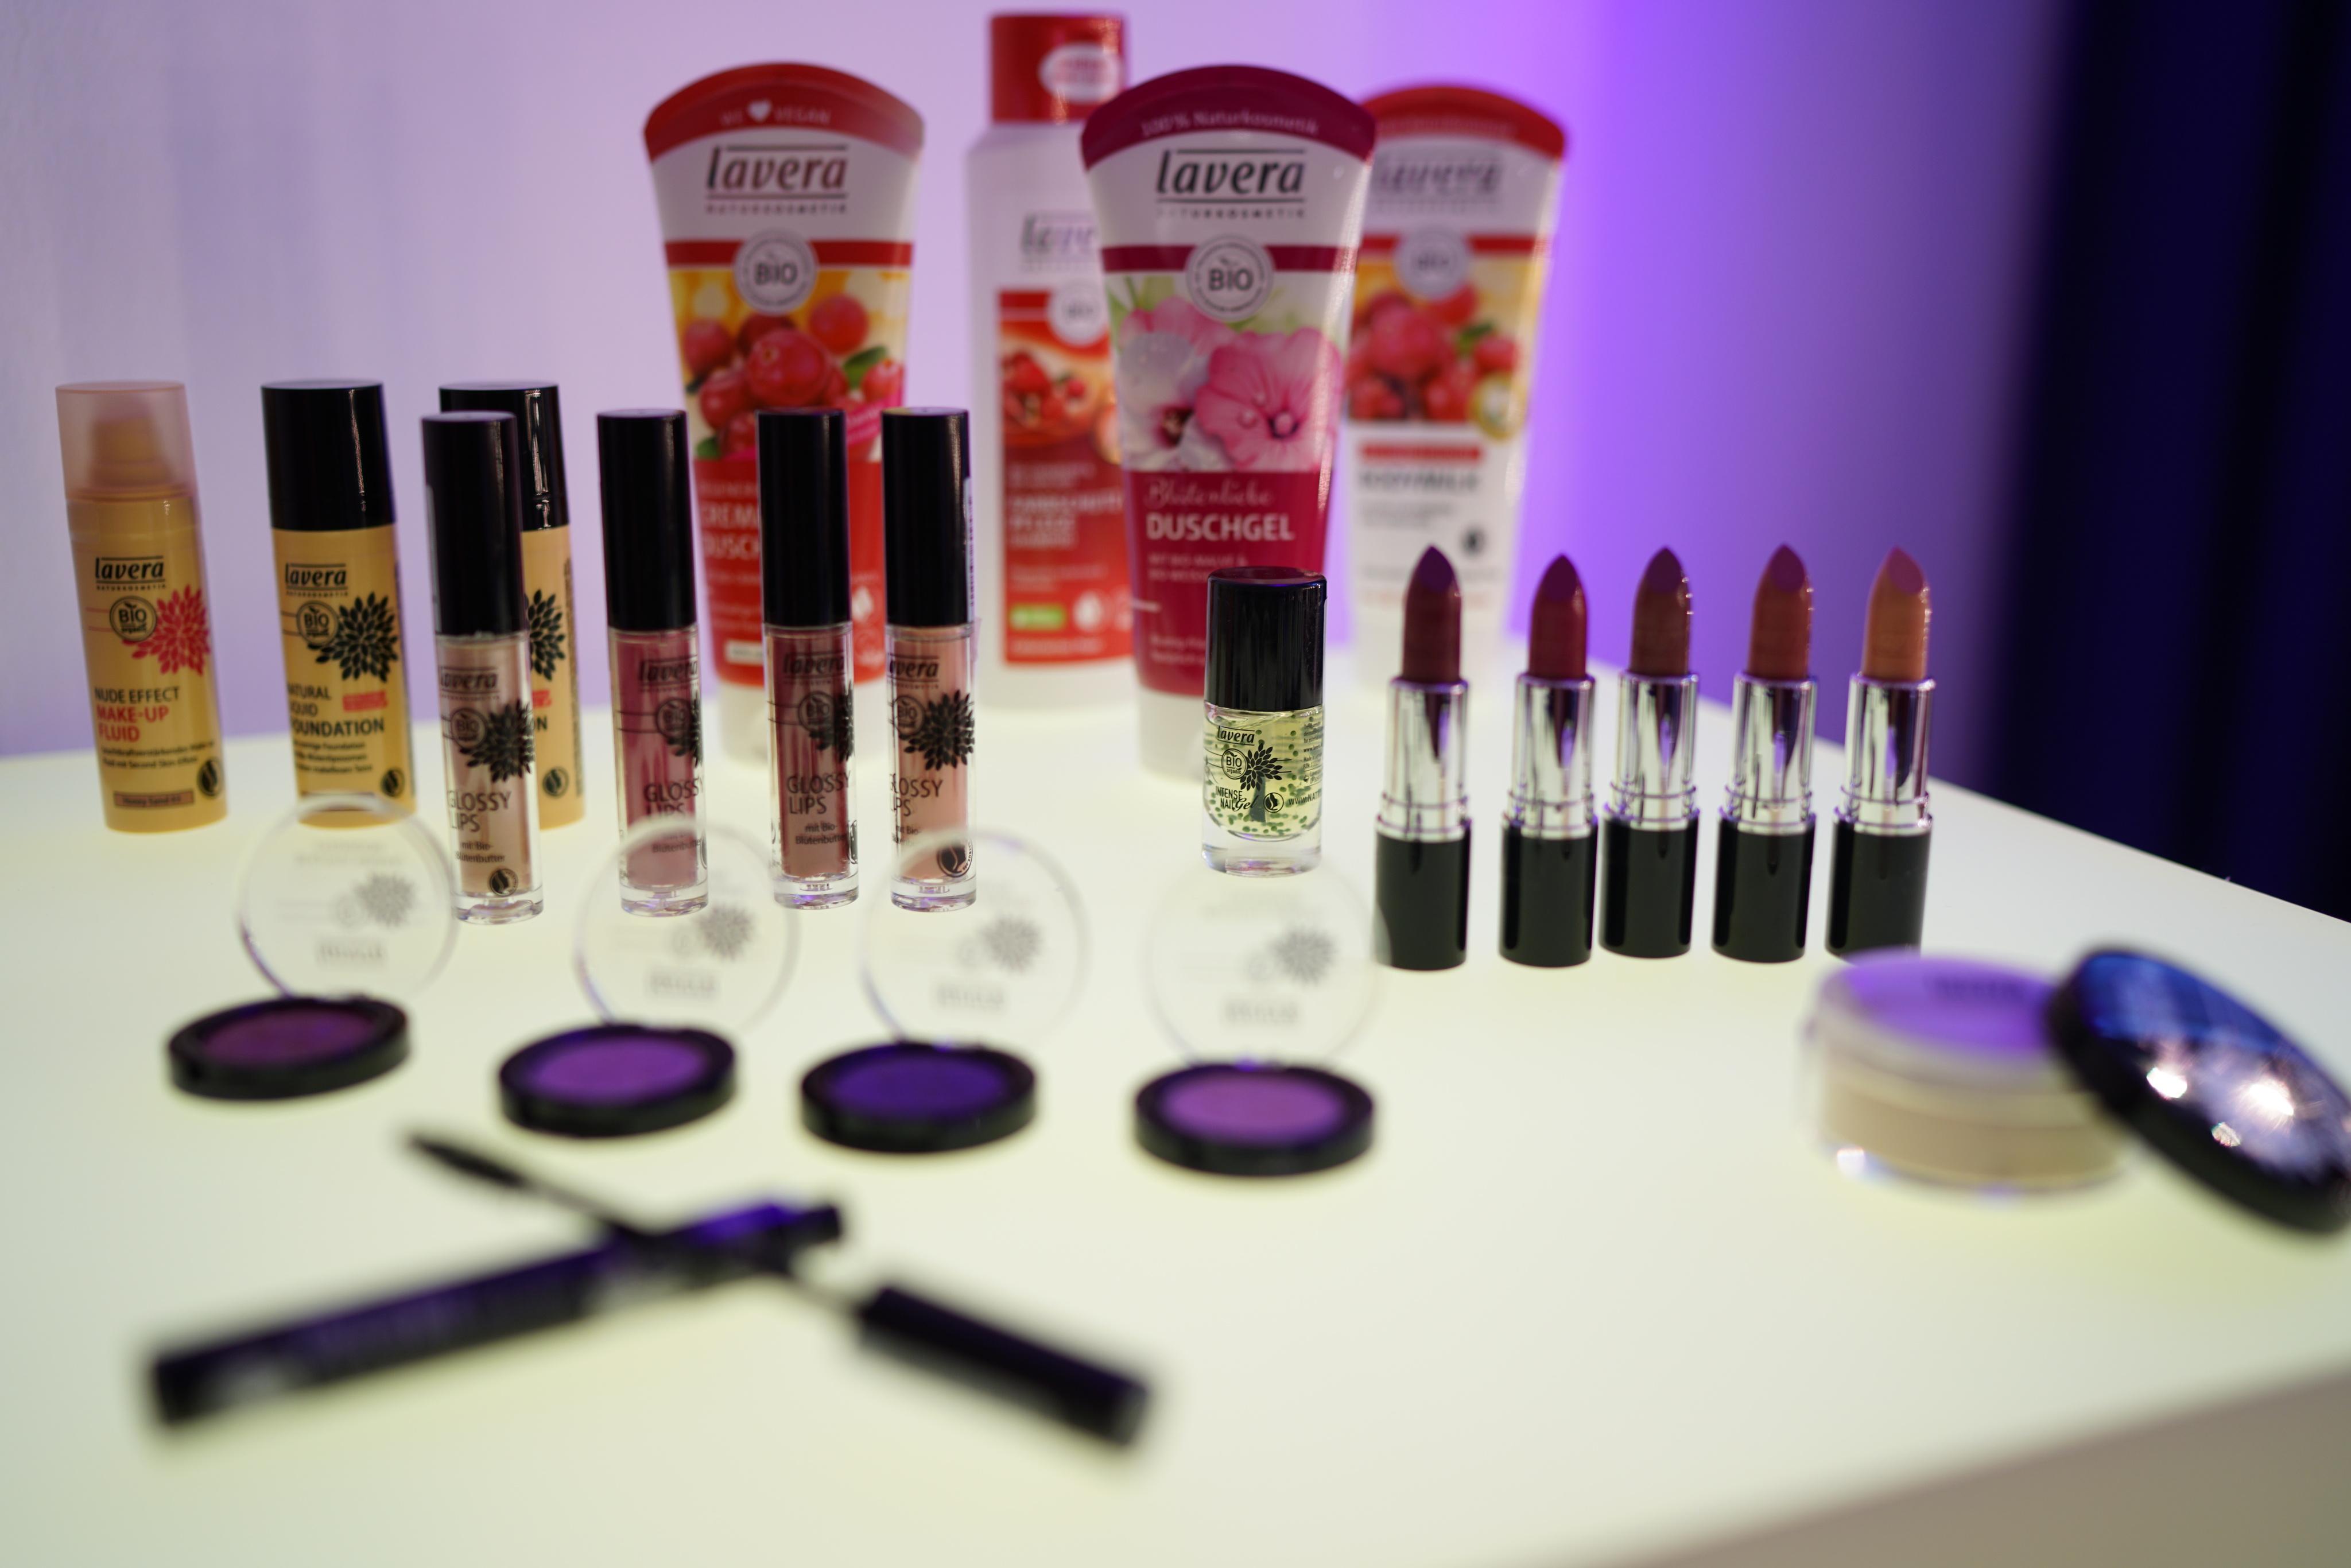 Die Essentials beim Workshop #lavera #naturkosmteik #color #makeup #skincare 